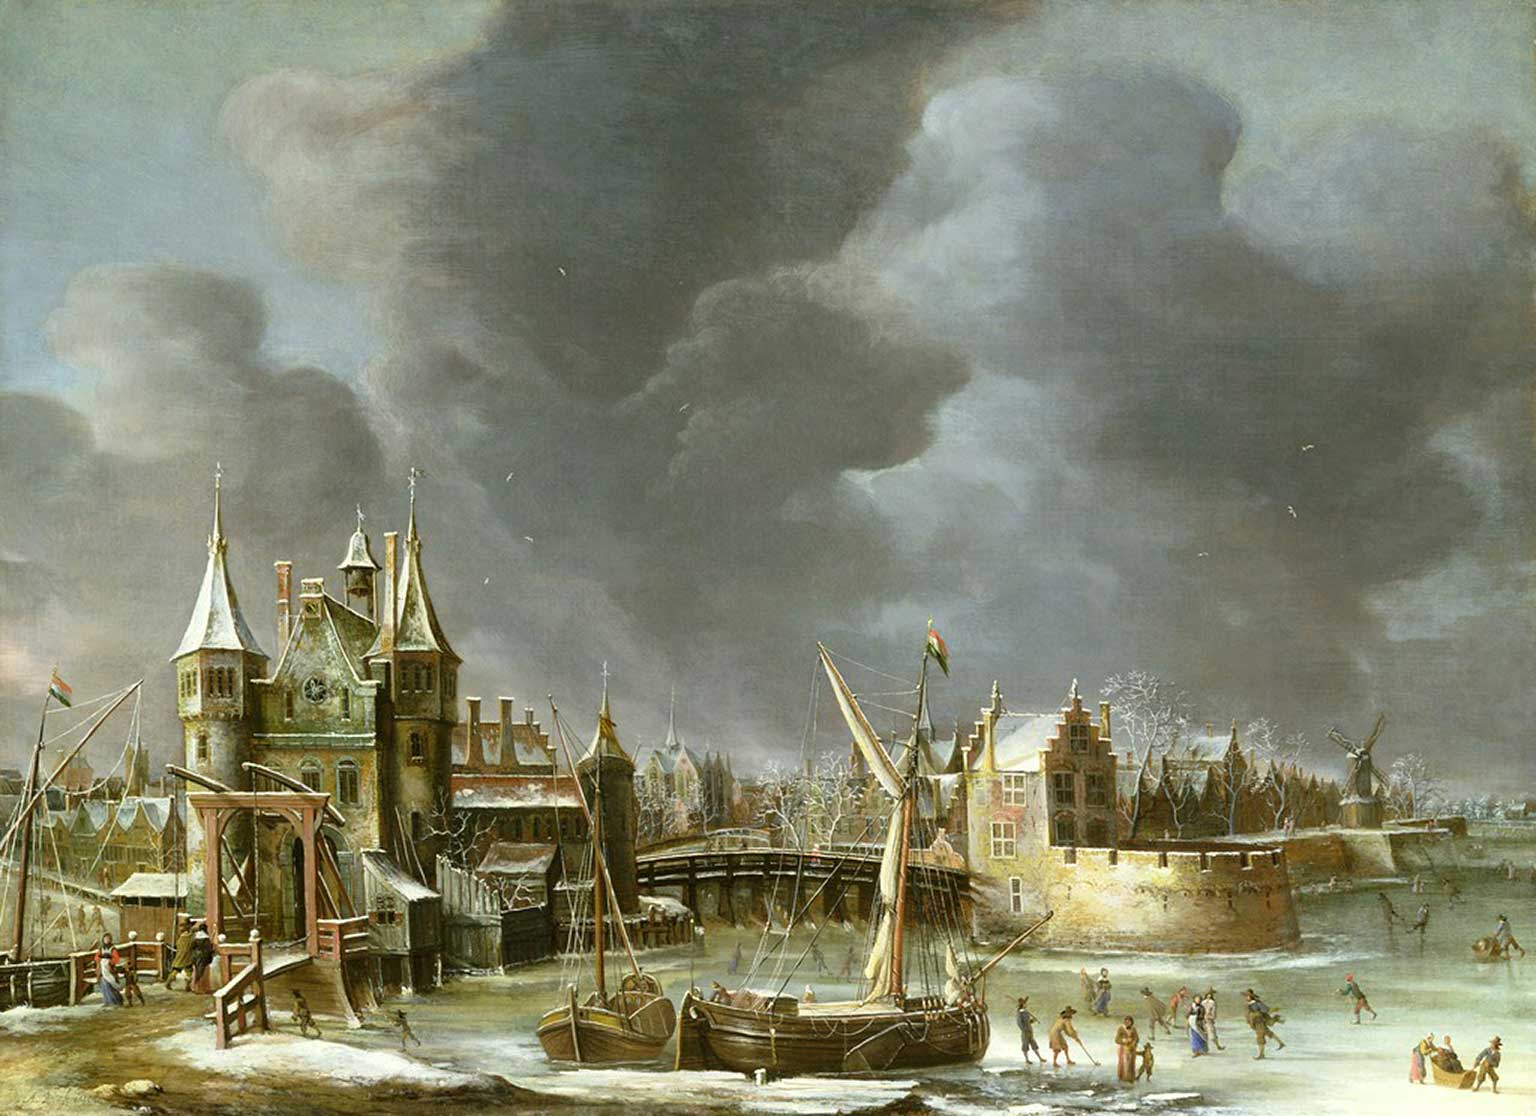 Oude Regulierspoort in Amsterdam in de winter, schilderij uit 1650 van Abraham Beerstraten